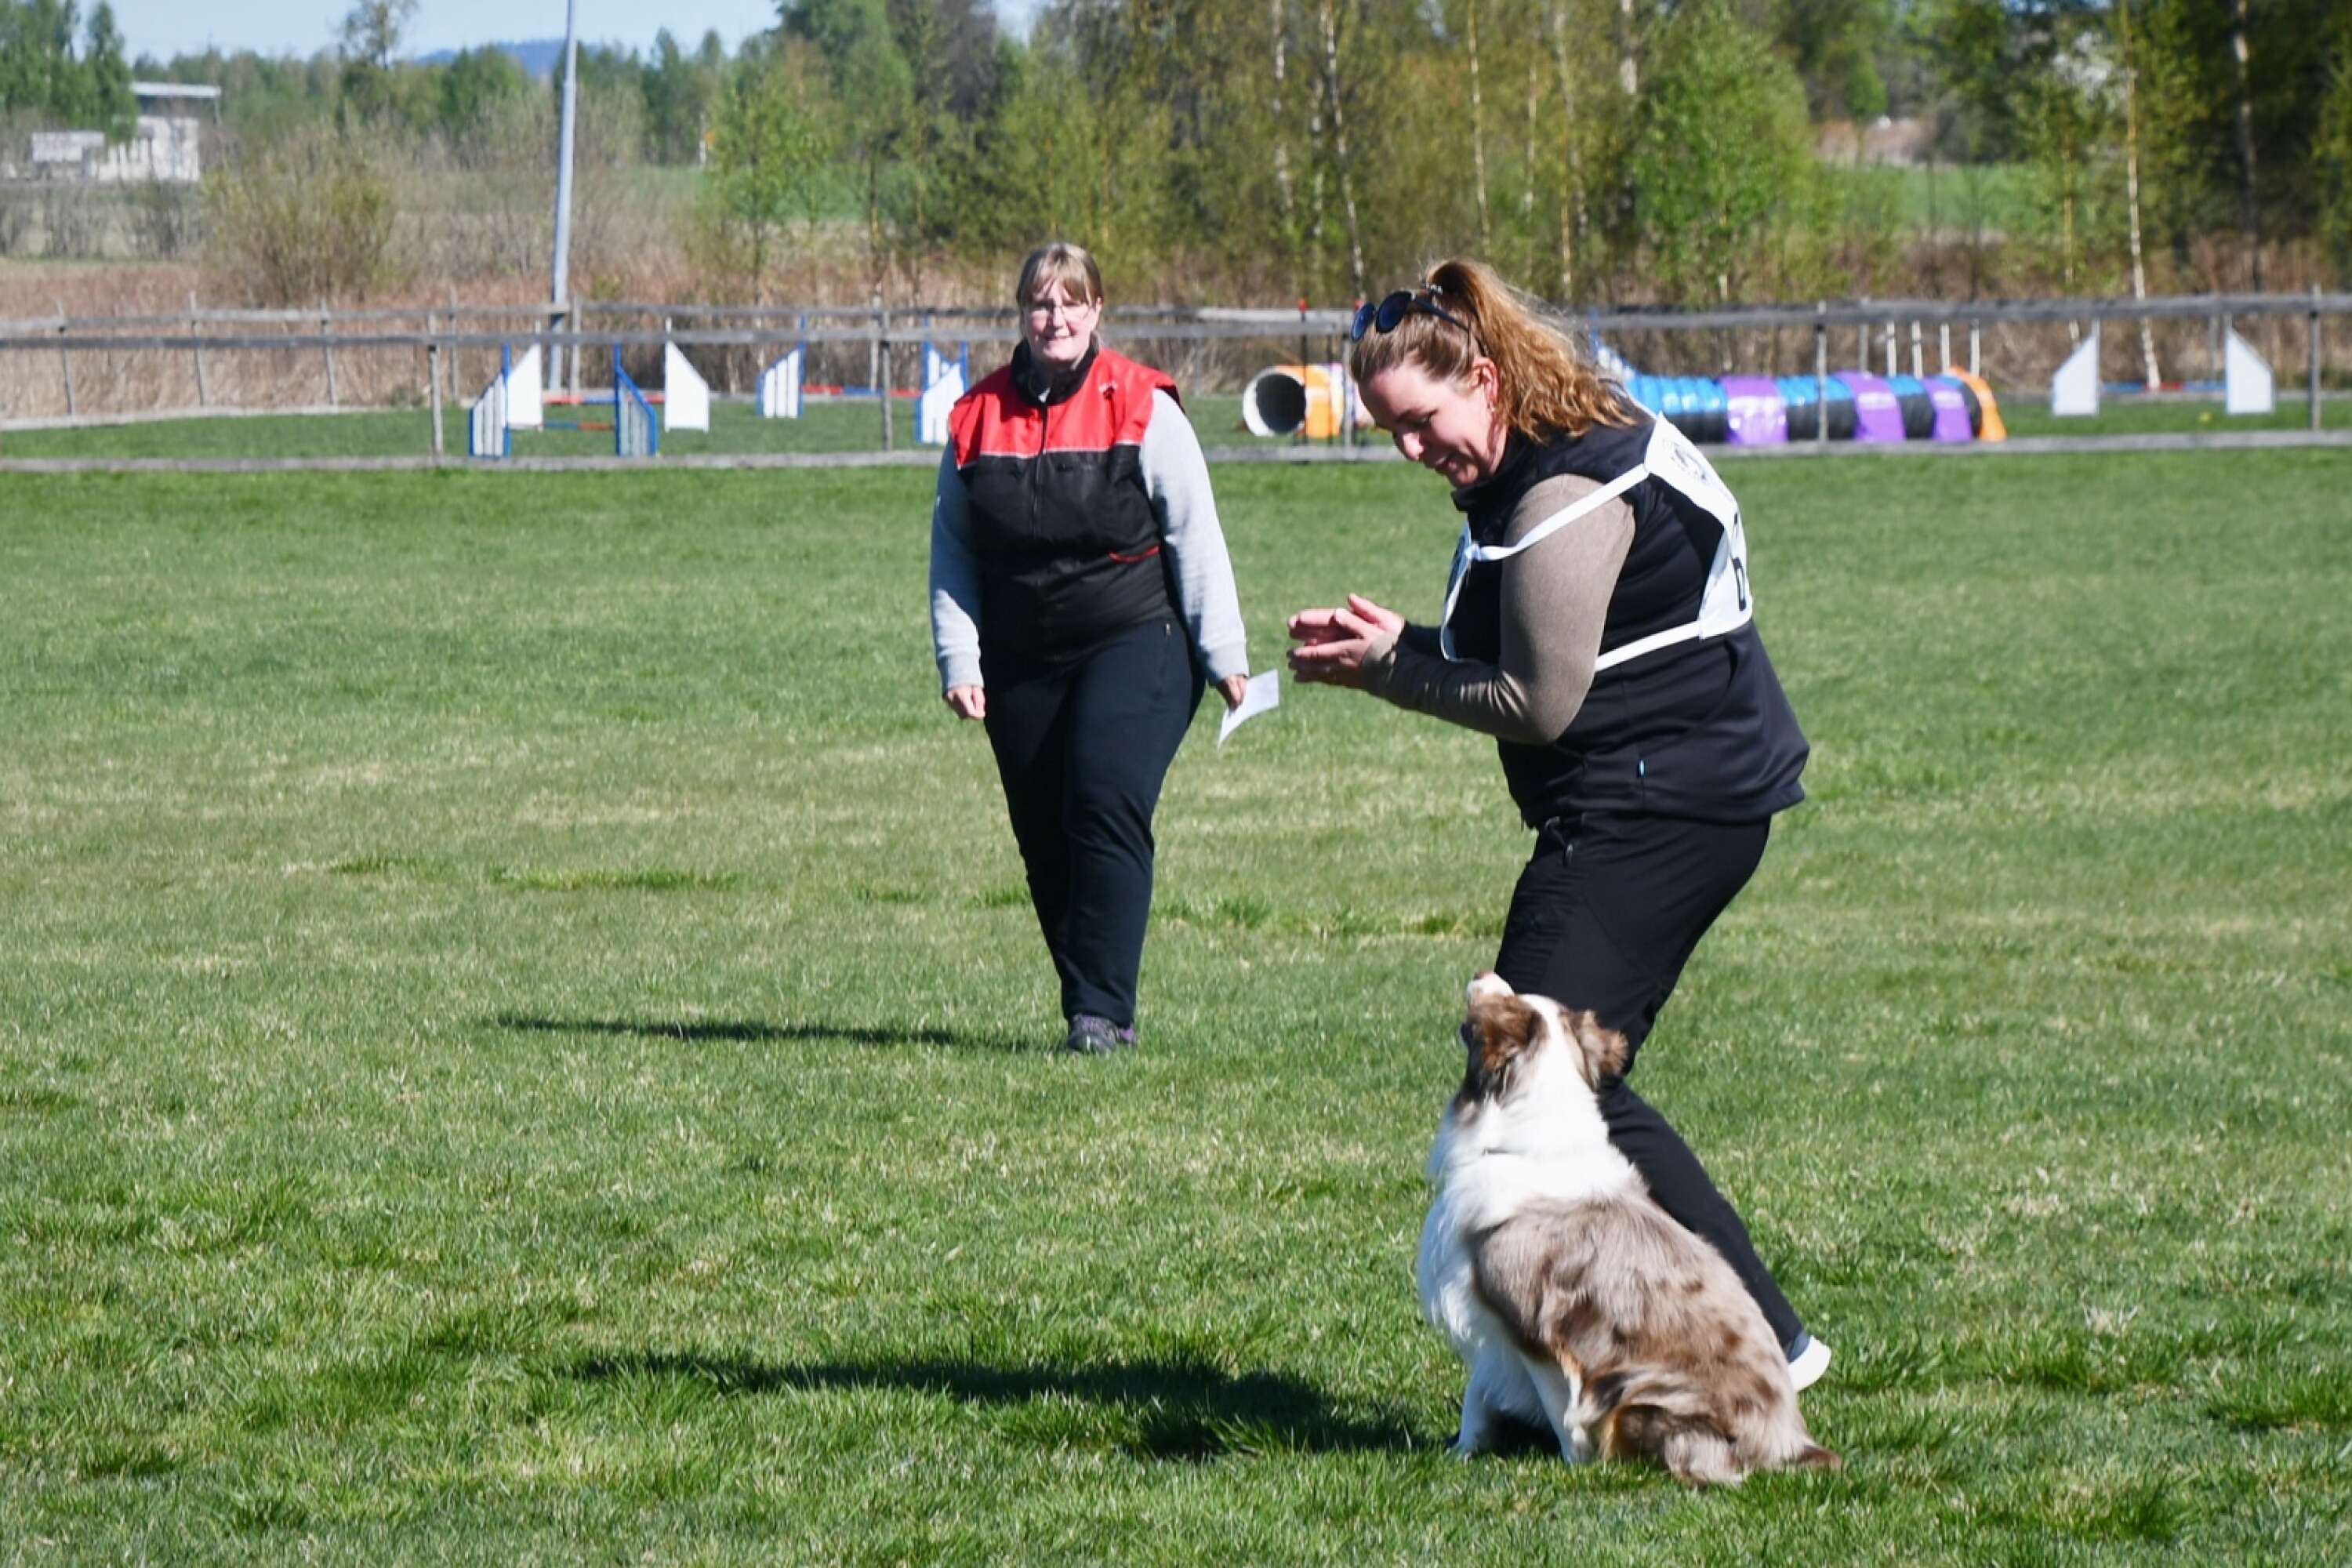 Tolv ekipage deltog i lydnadstävlingen. I bakgrunden tävlingsledaren Erika Eriksson, Torsby brukshundklubb.